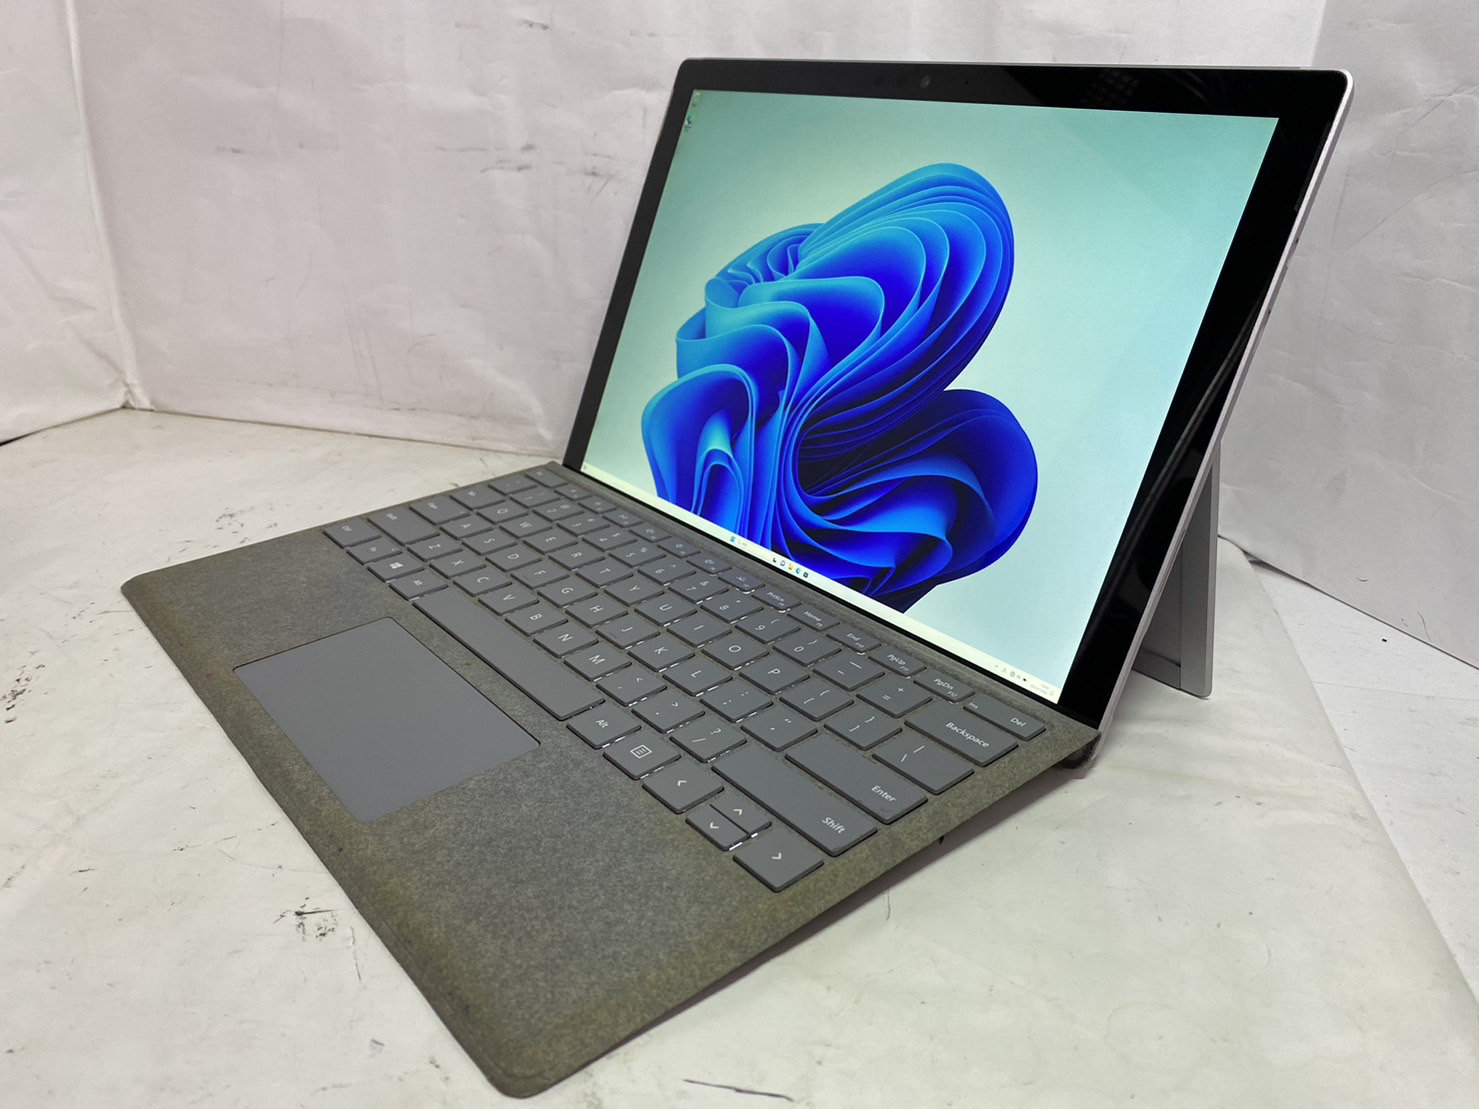 Microsoft(マイクロソフト) Surface Pro 5 1796の激安通販 - パソコン ...